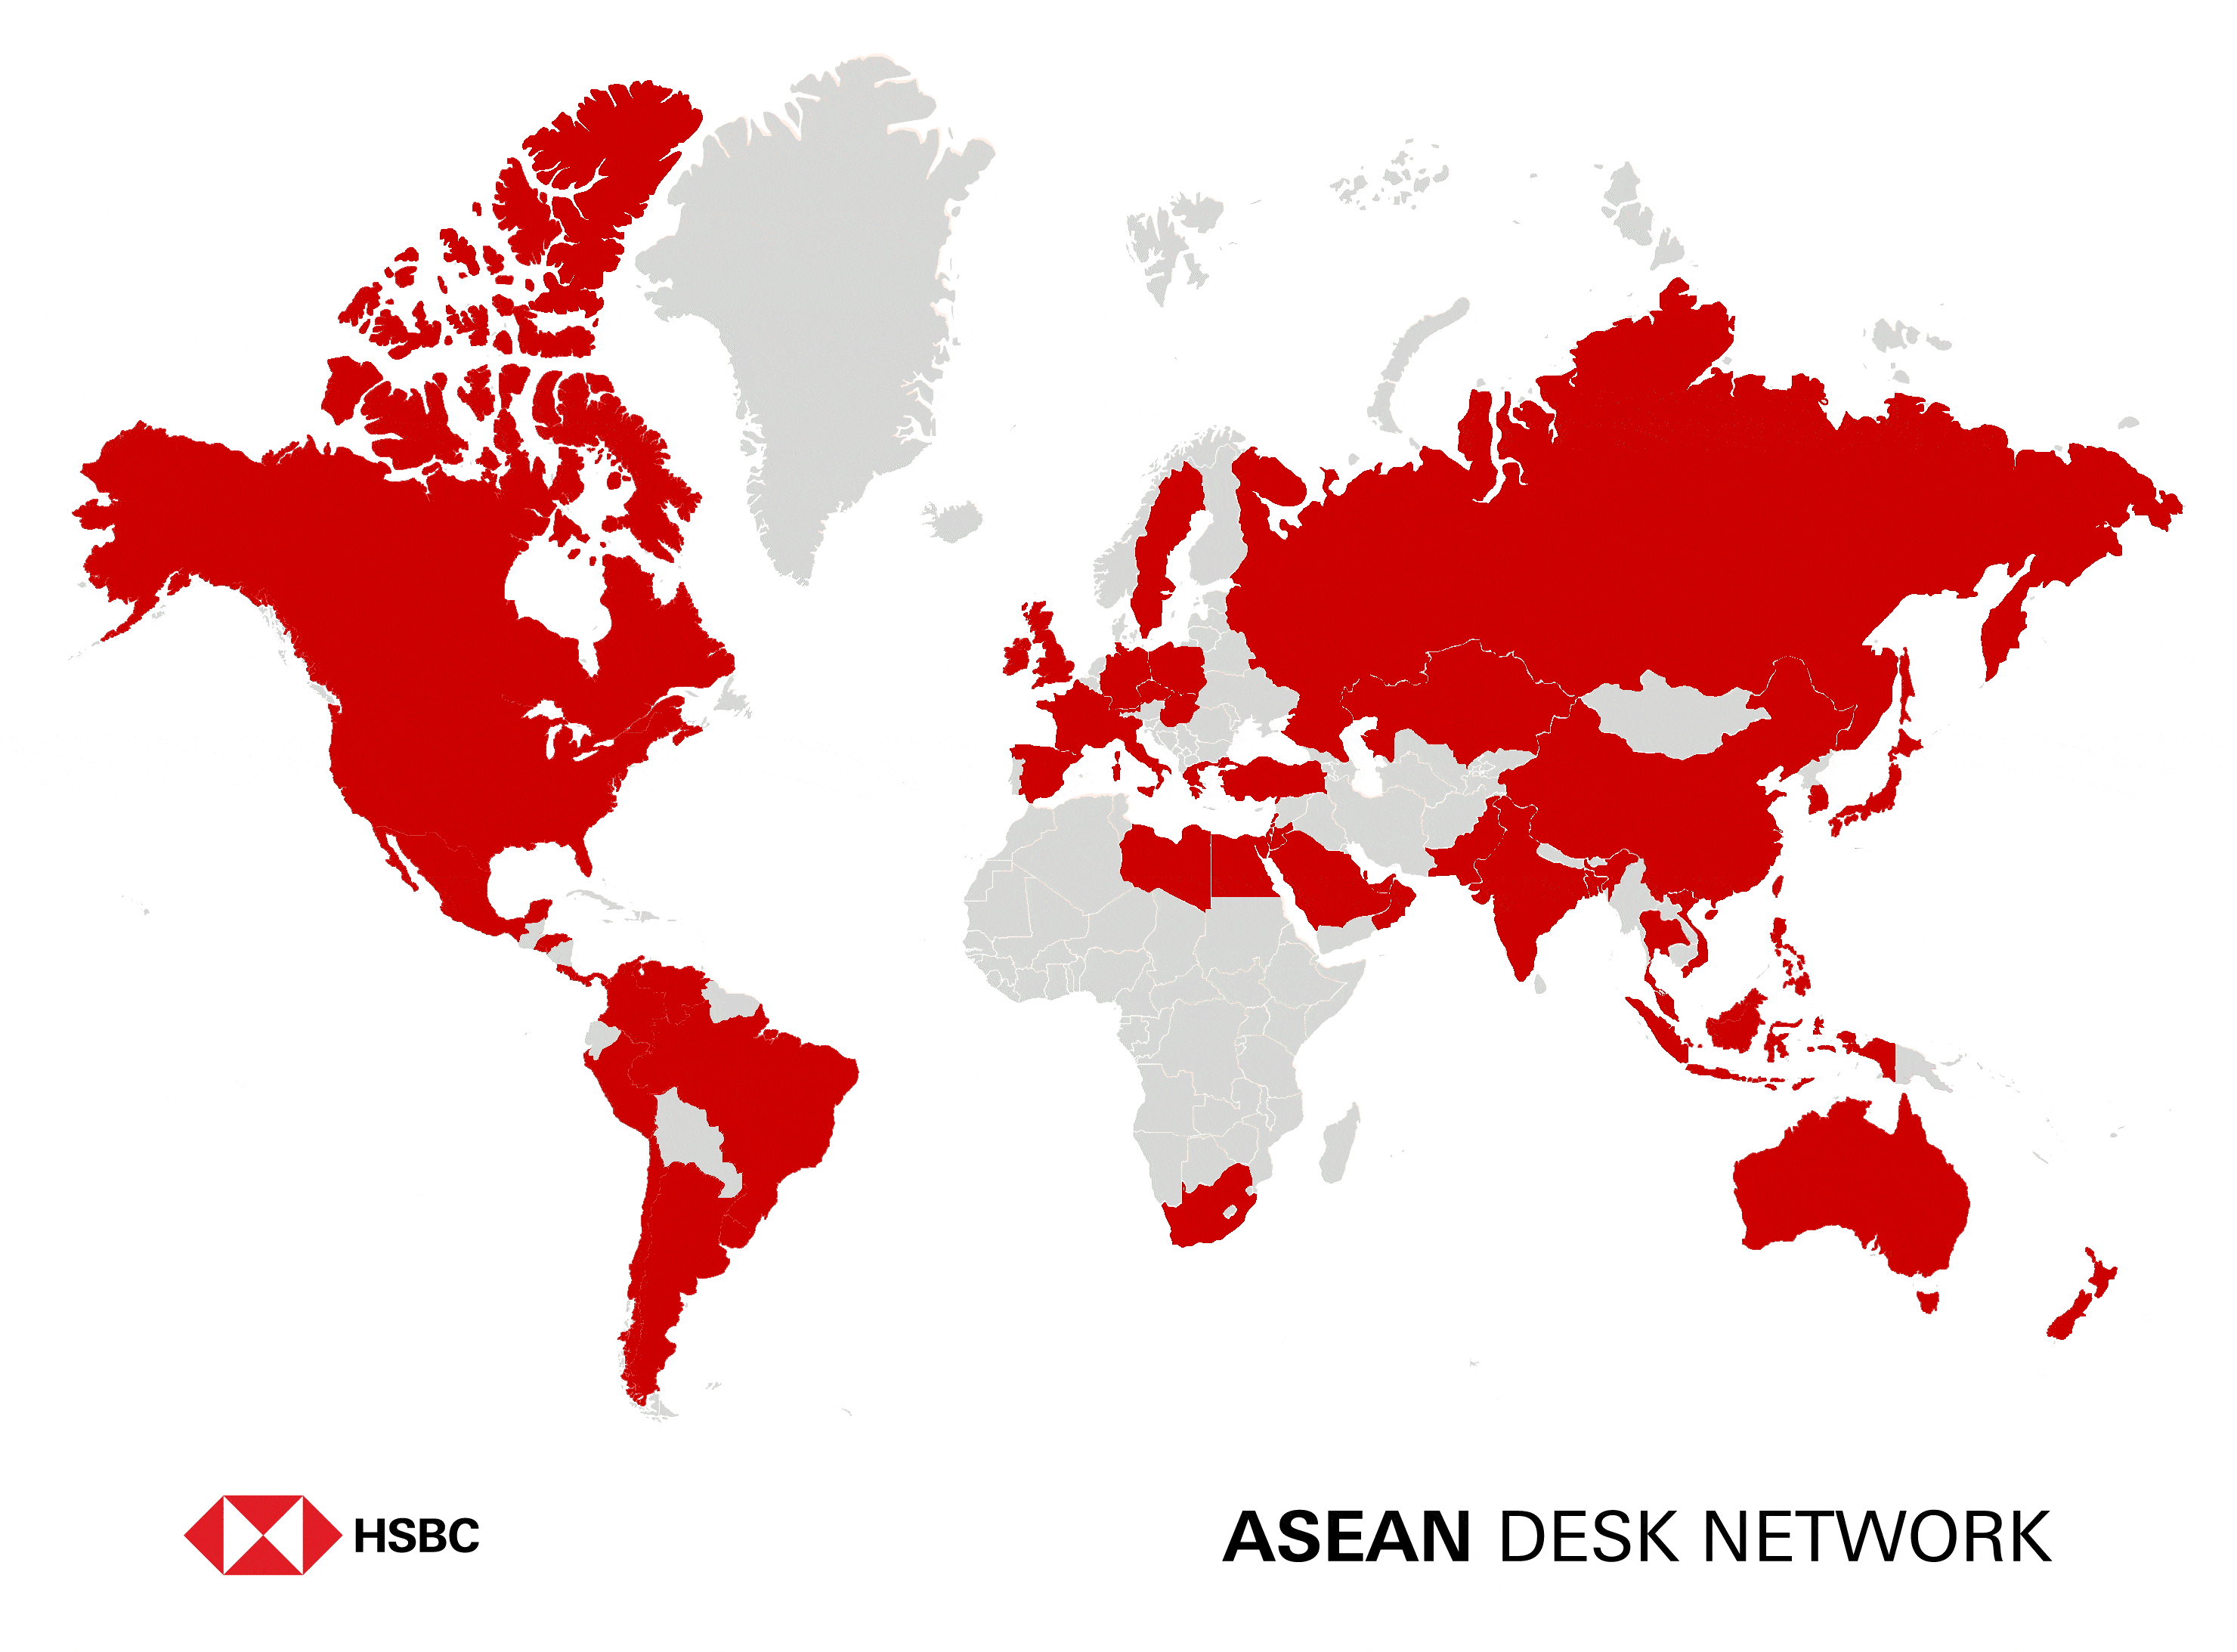 ASEAN Desk Network